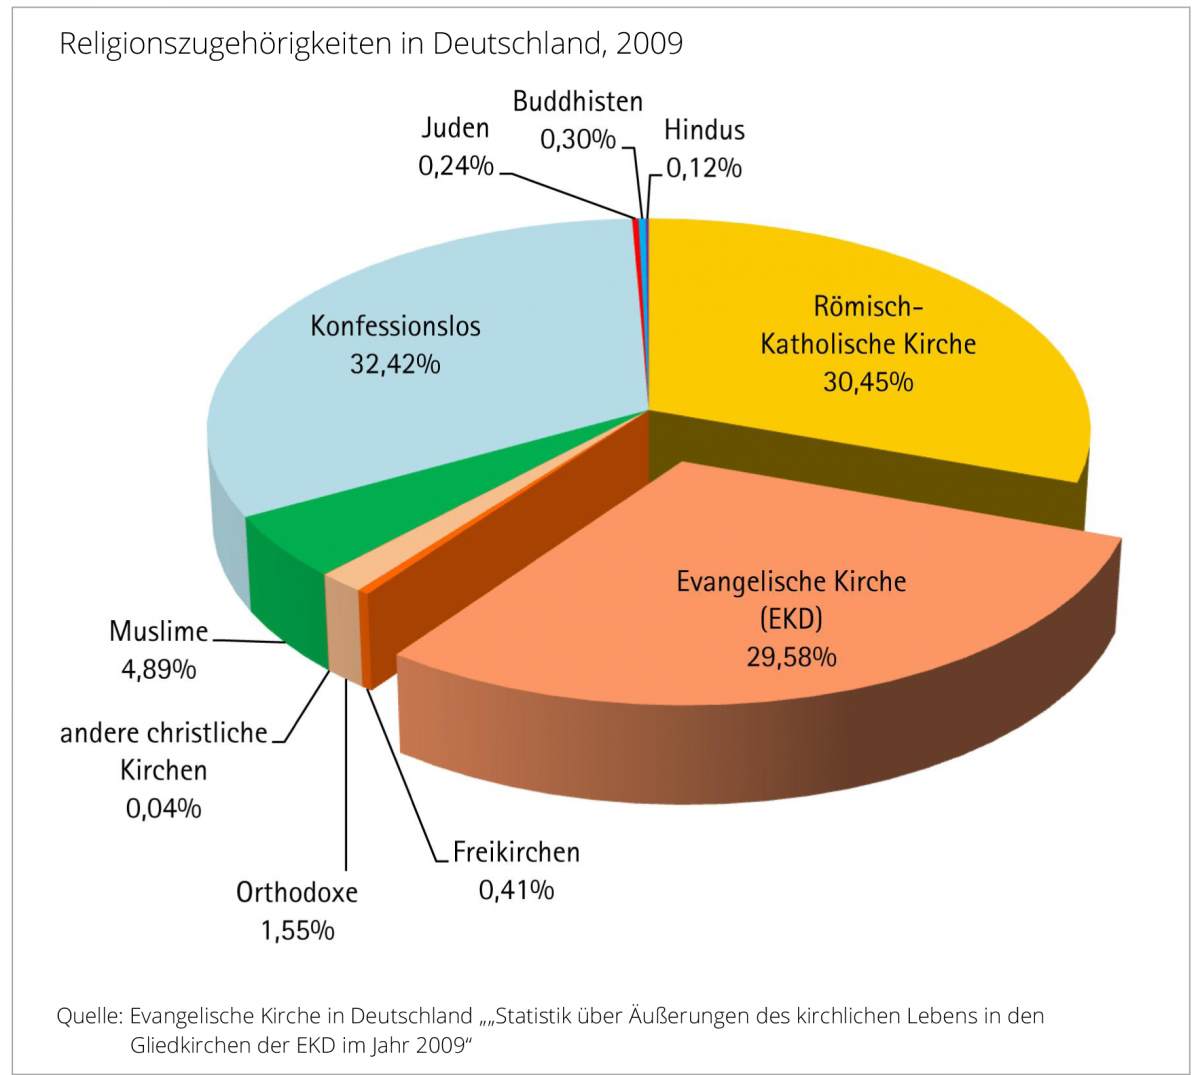 Wie viele orthodoxe gibt es in Deutschland?